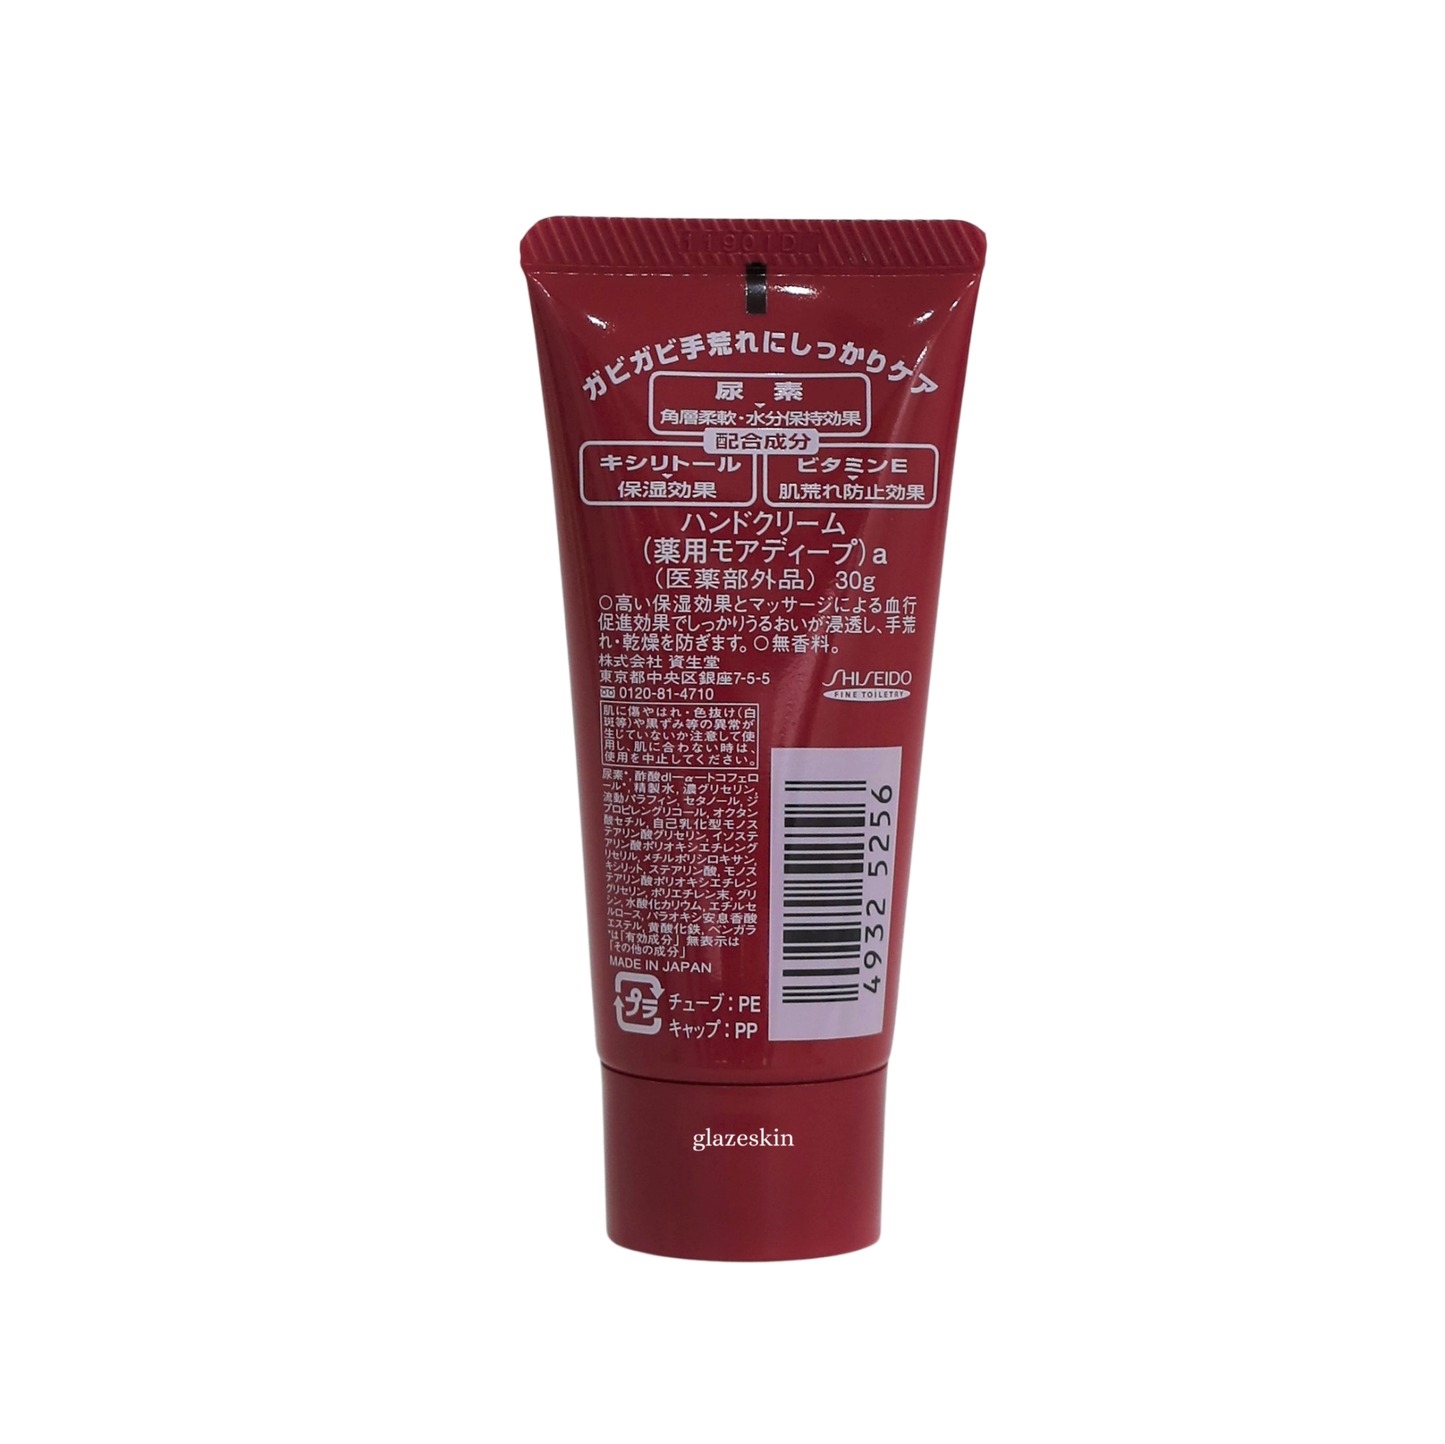 Shiseido - Hand Cream - 30g - glazeskin